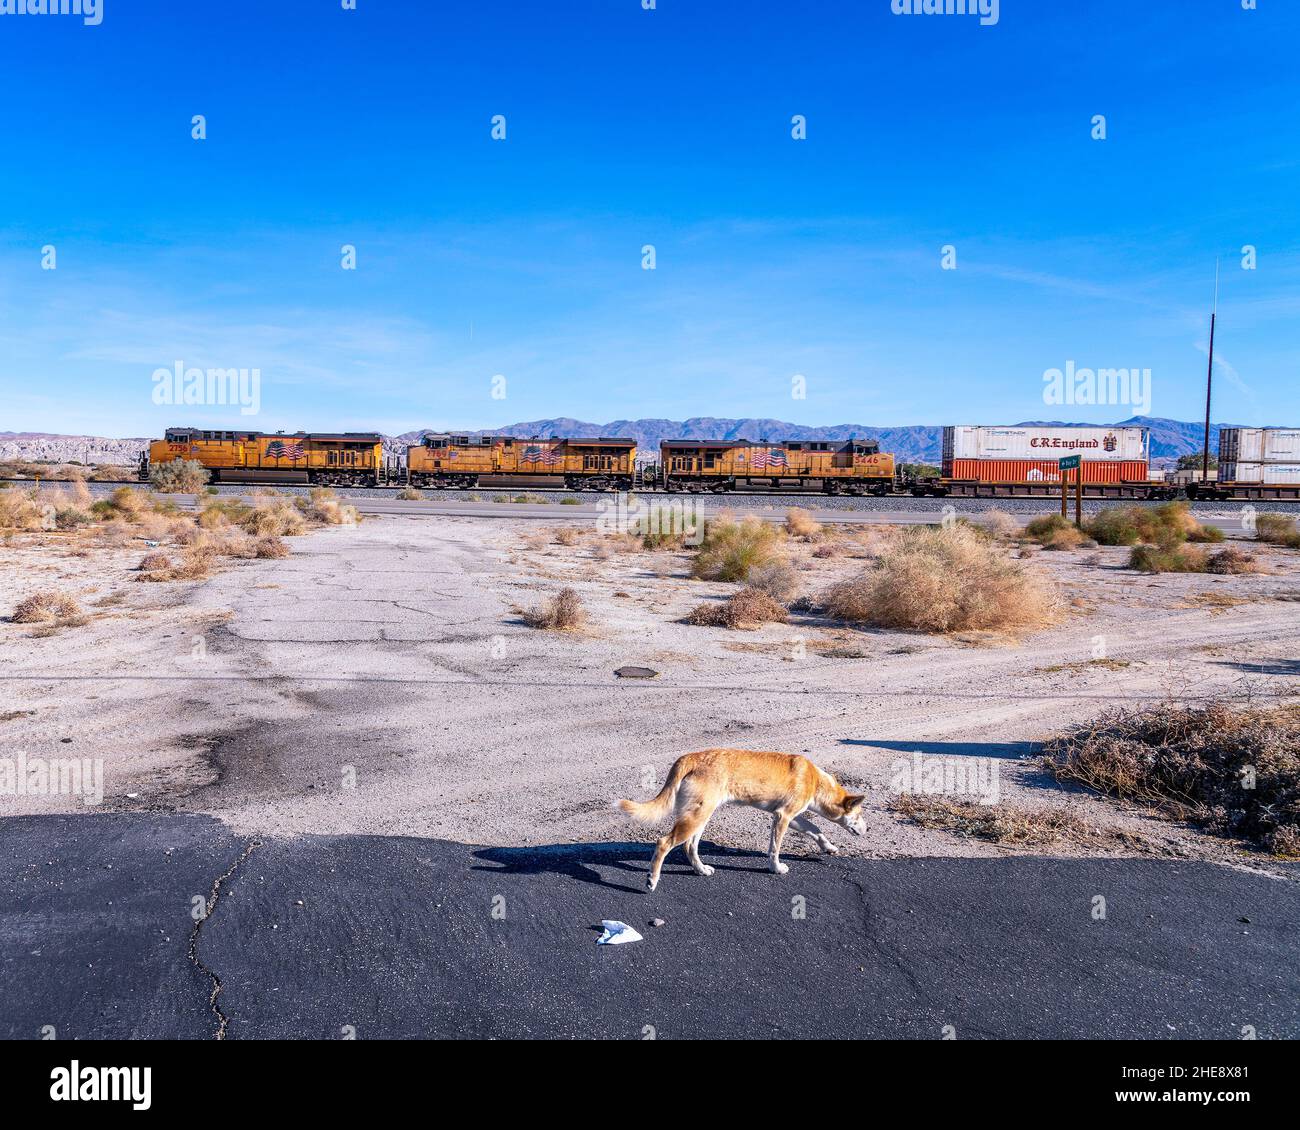 Mekka, CA, USA: 04. Januar 2022: Ein streunender Hund sucht in der Nähe der Saltonsee nach Futter, während ein Güterzug vorbeifährt, Mekka, CA. Stockfoto